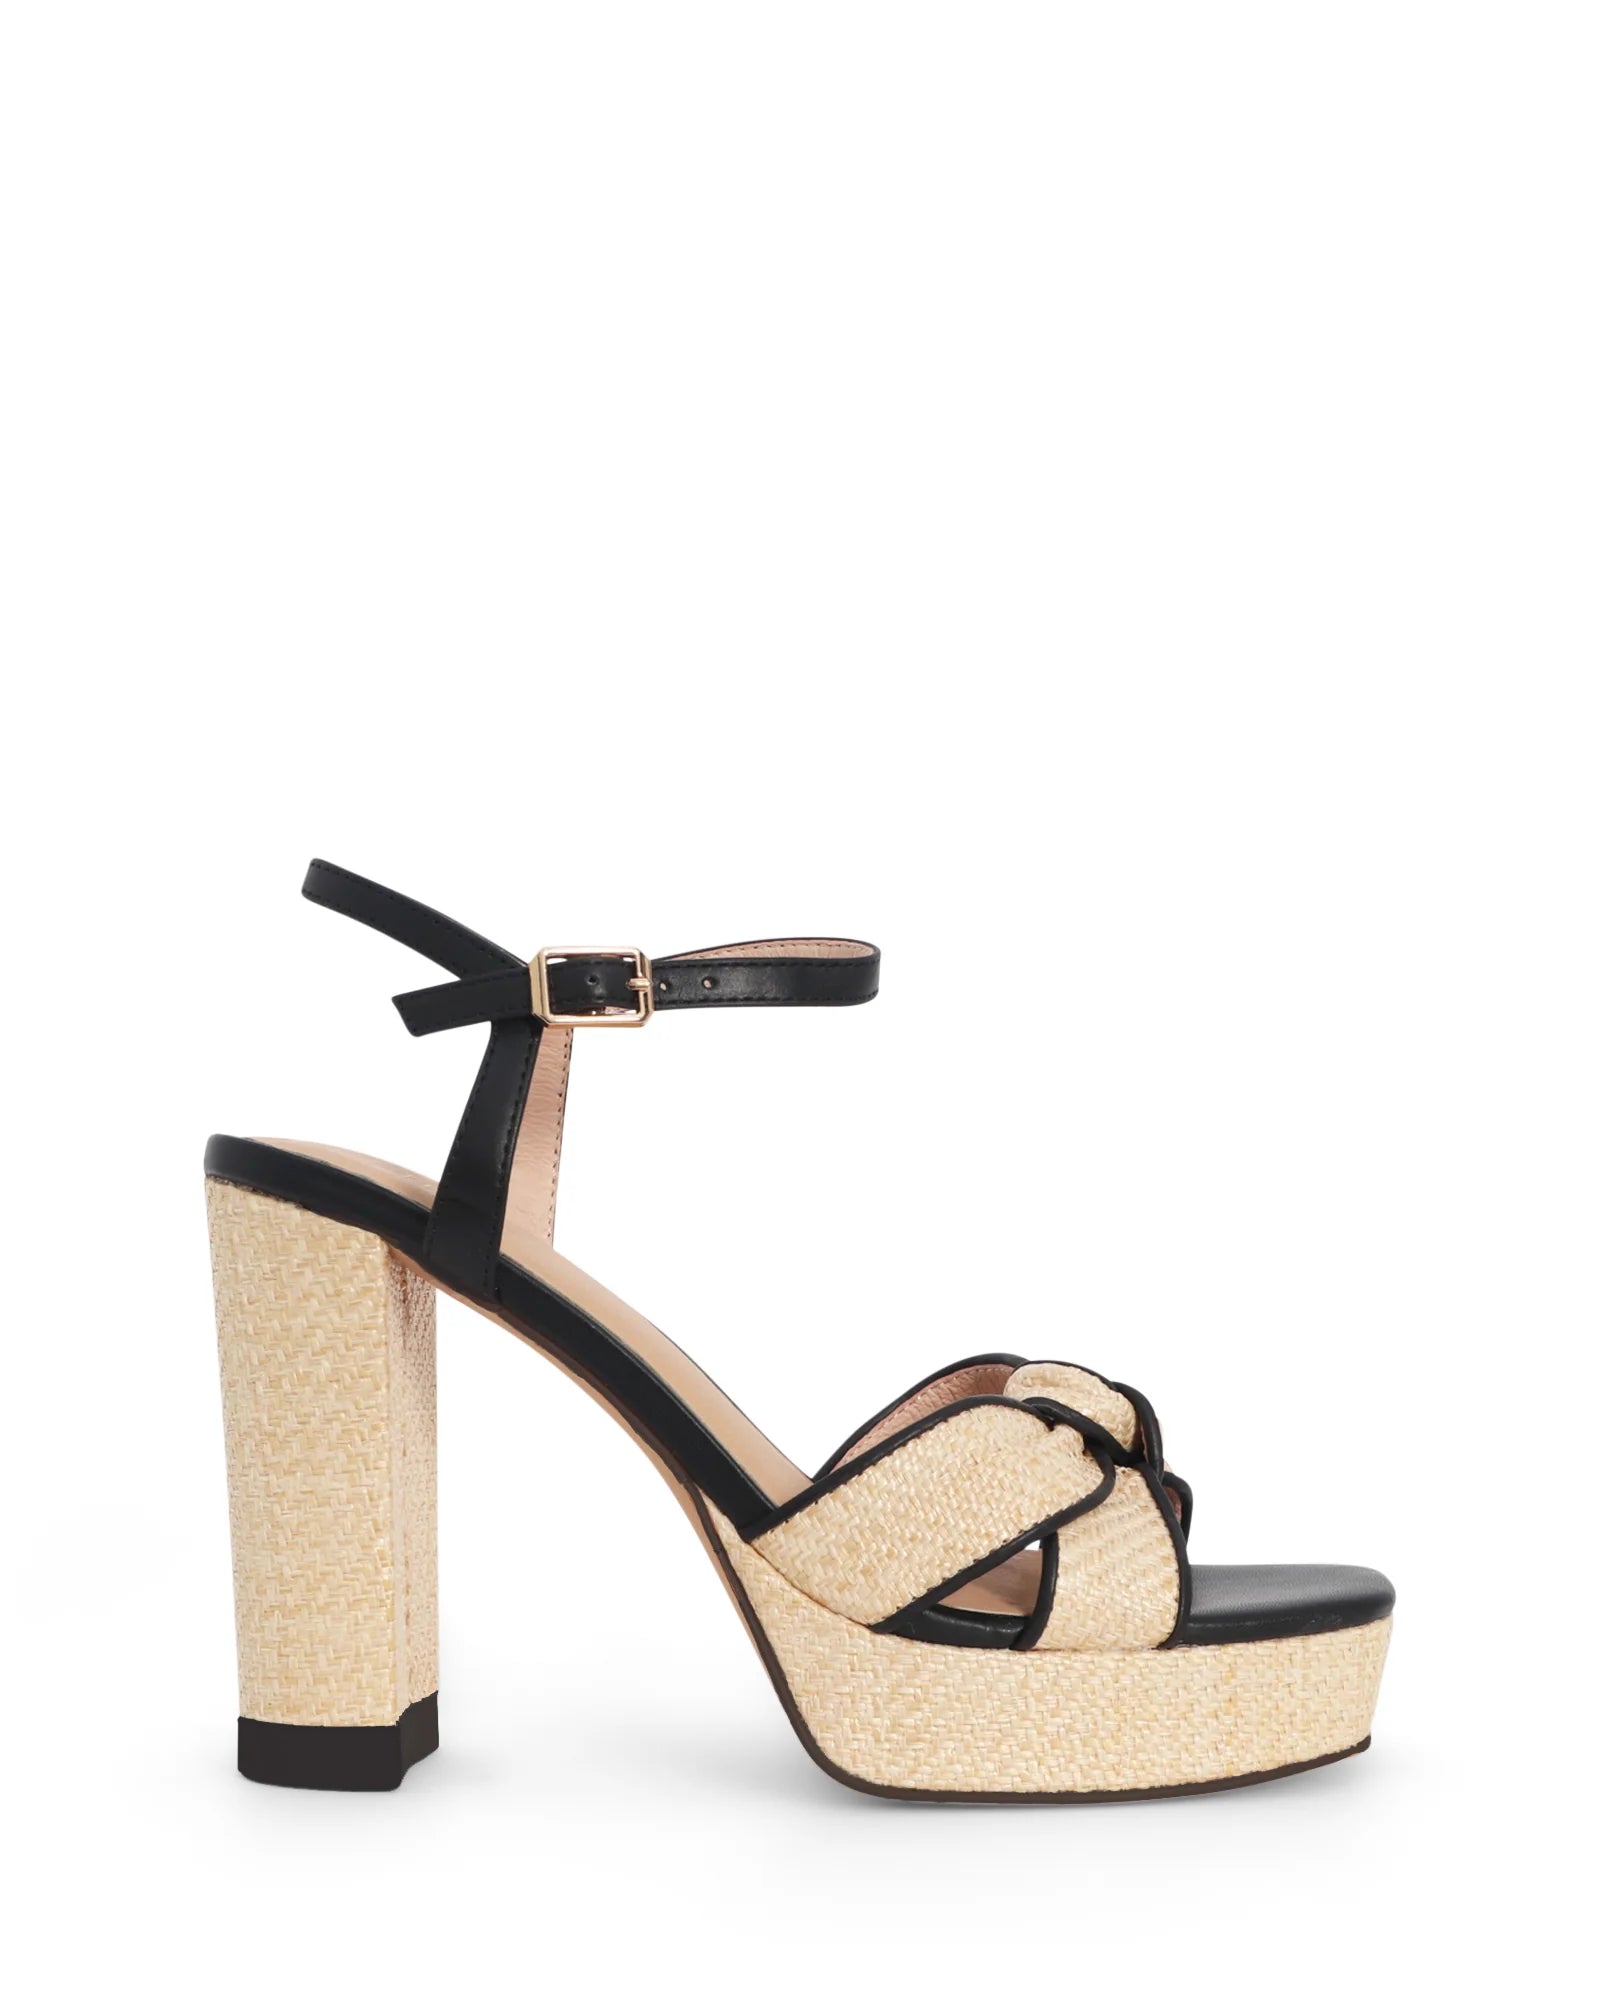 BELLA PLATFORM - NUDE FOOTWEAR - 36, 37, 38, 39, 40, 41, BLACK, NATURAL, womens footwear - Stomp Shoes Darwin